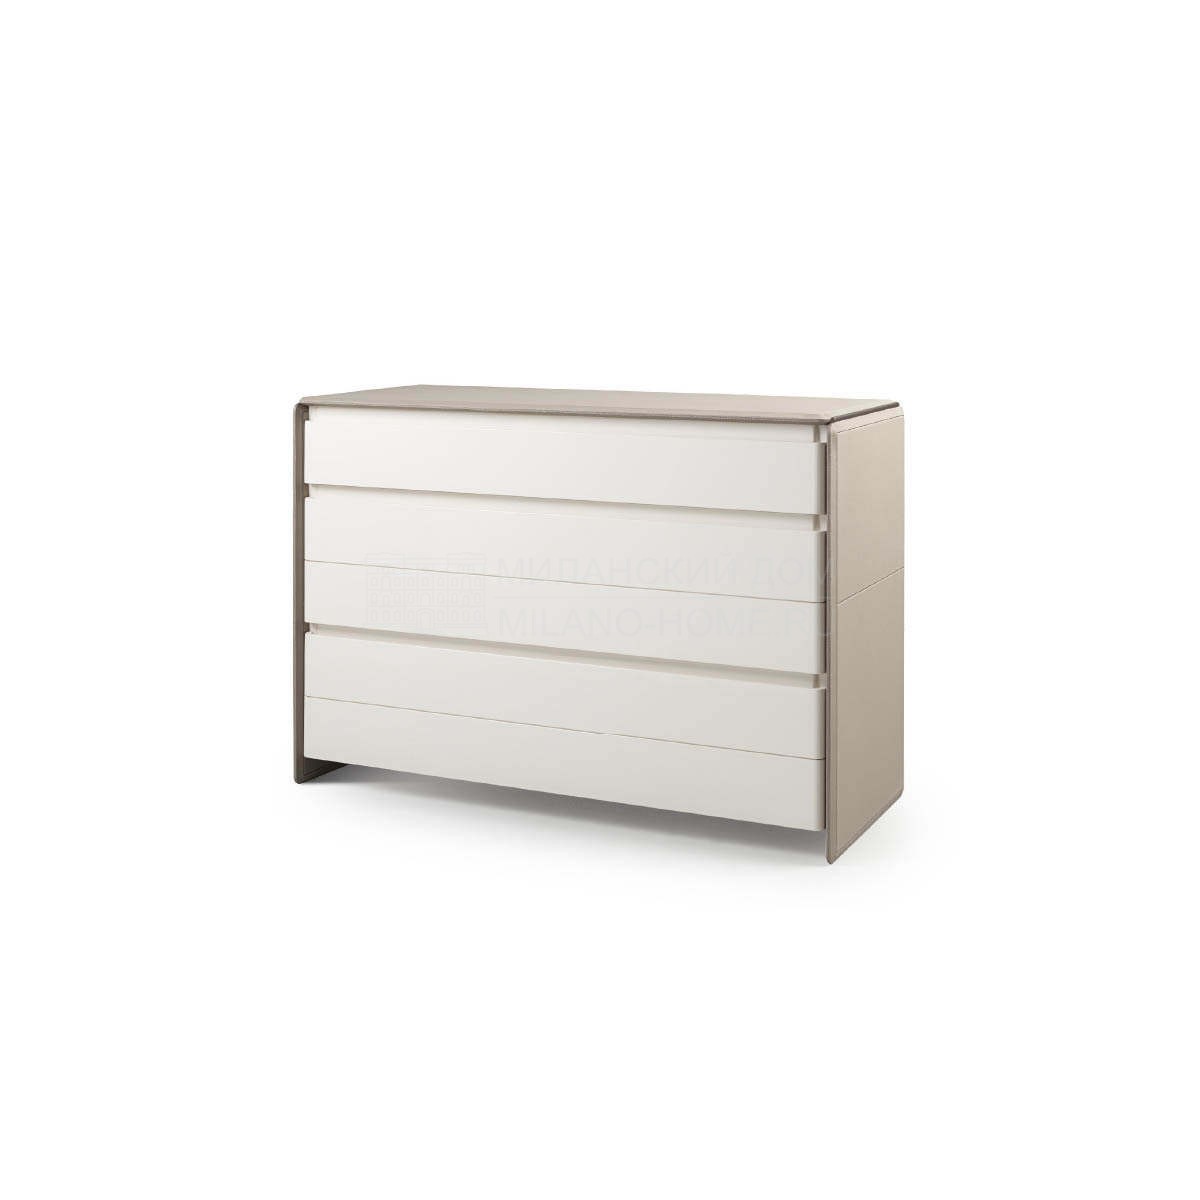 Комод Zero chest of drawers из Италии фабрики TURRI